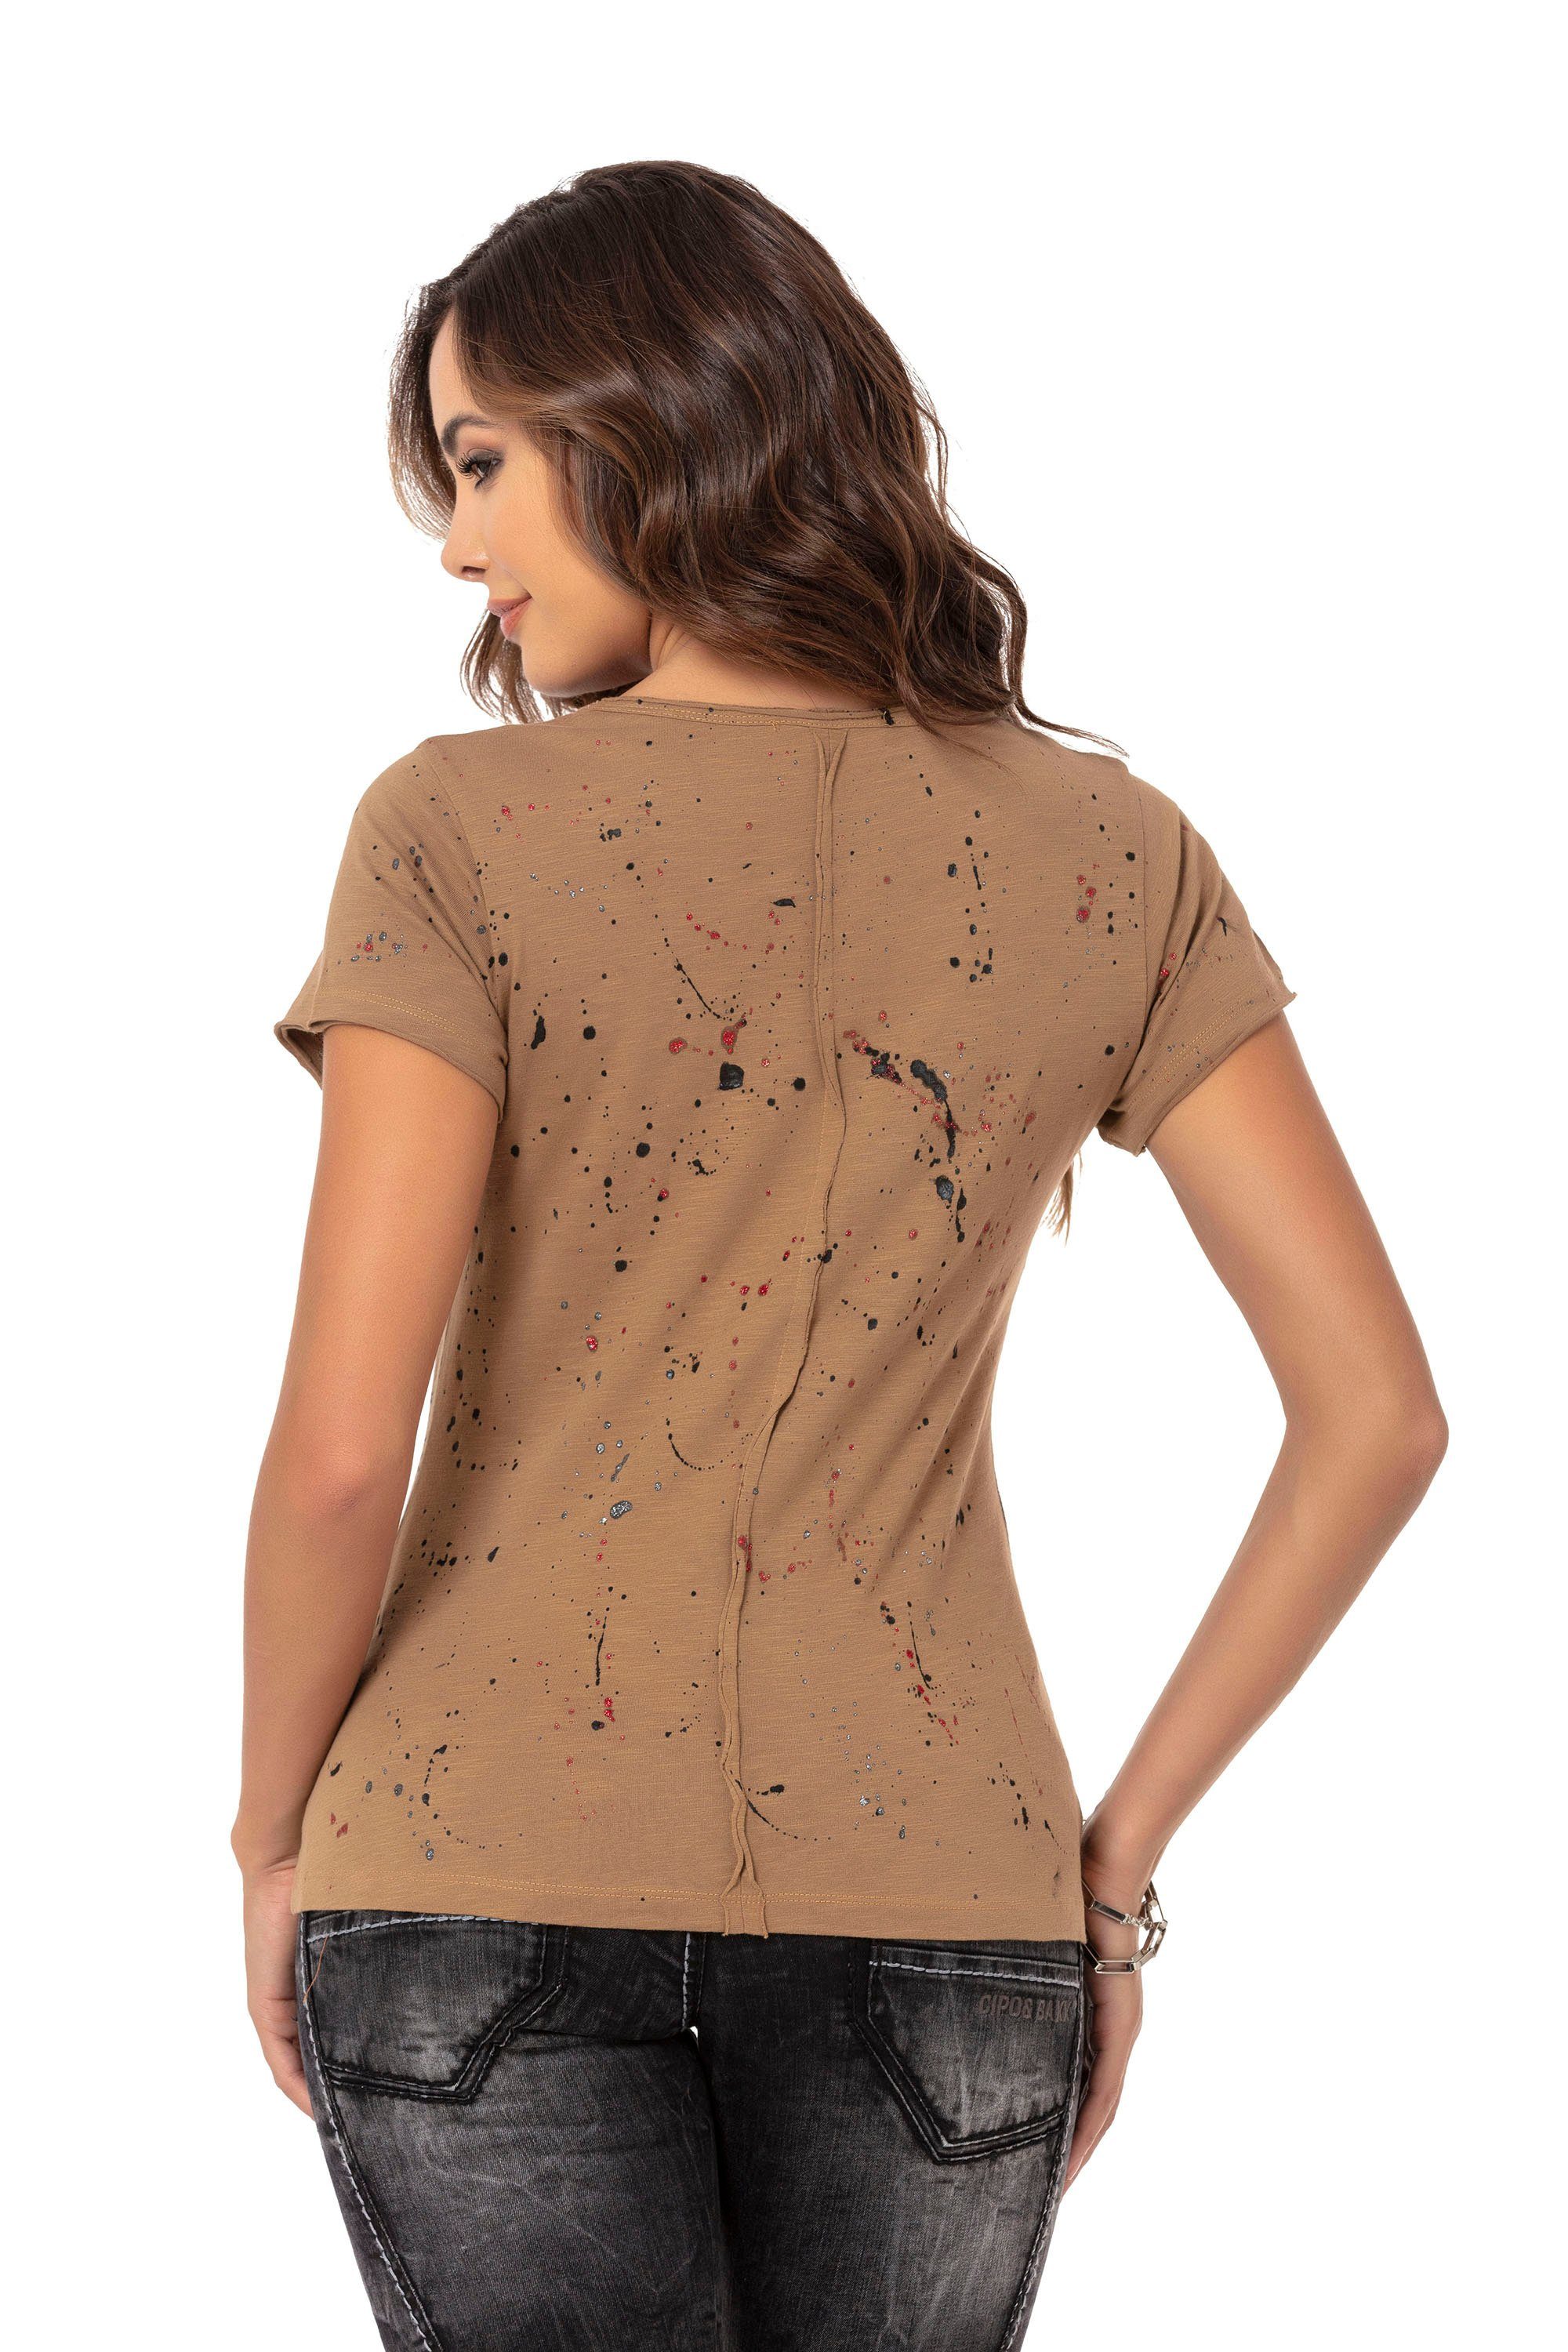 Cipo & Baxx T-Shirt mit braun Glitzersteinchen trendigen